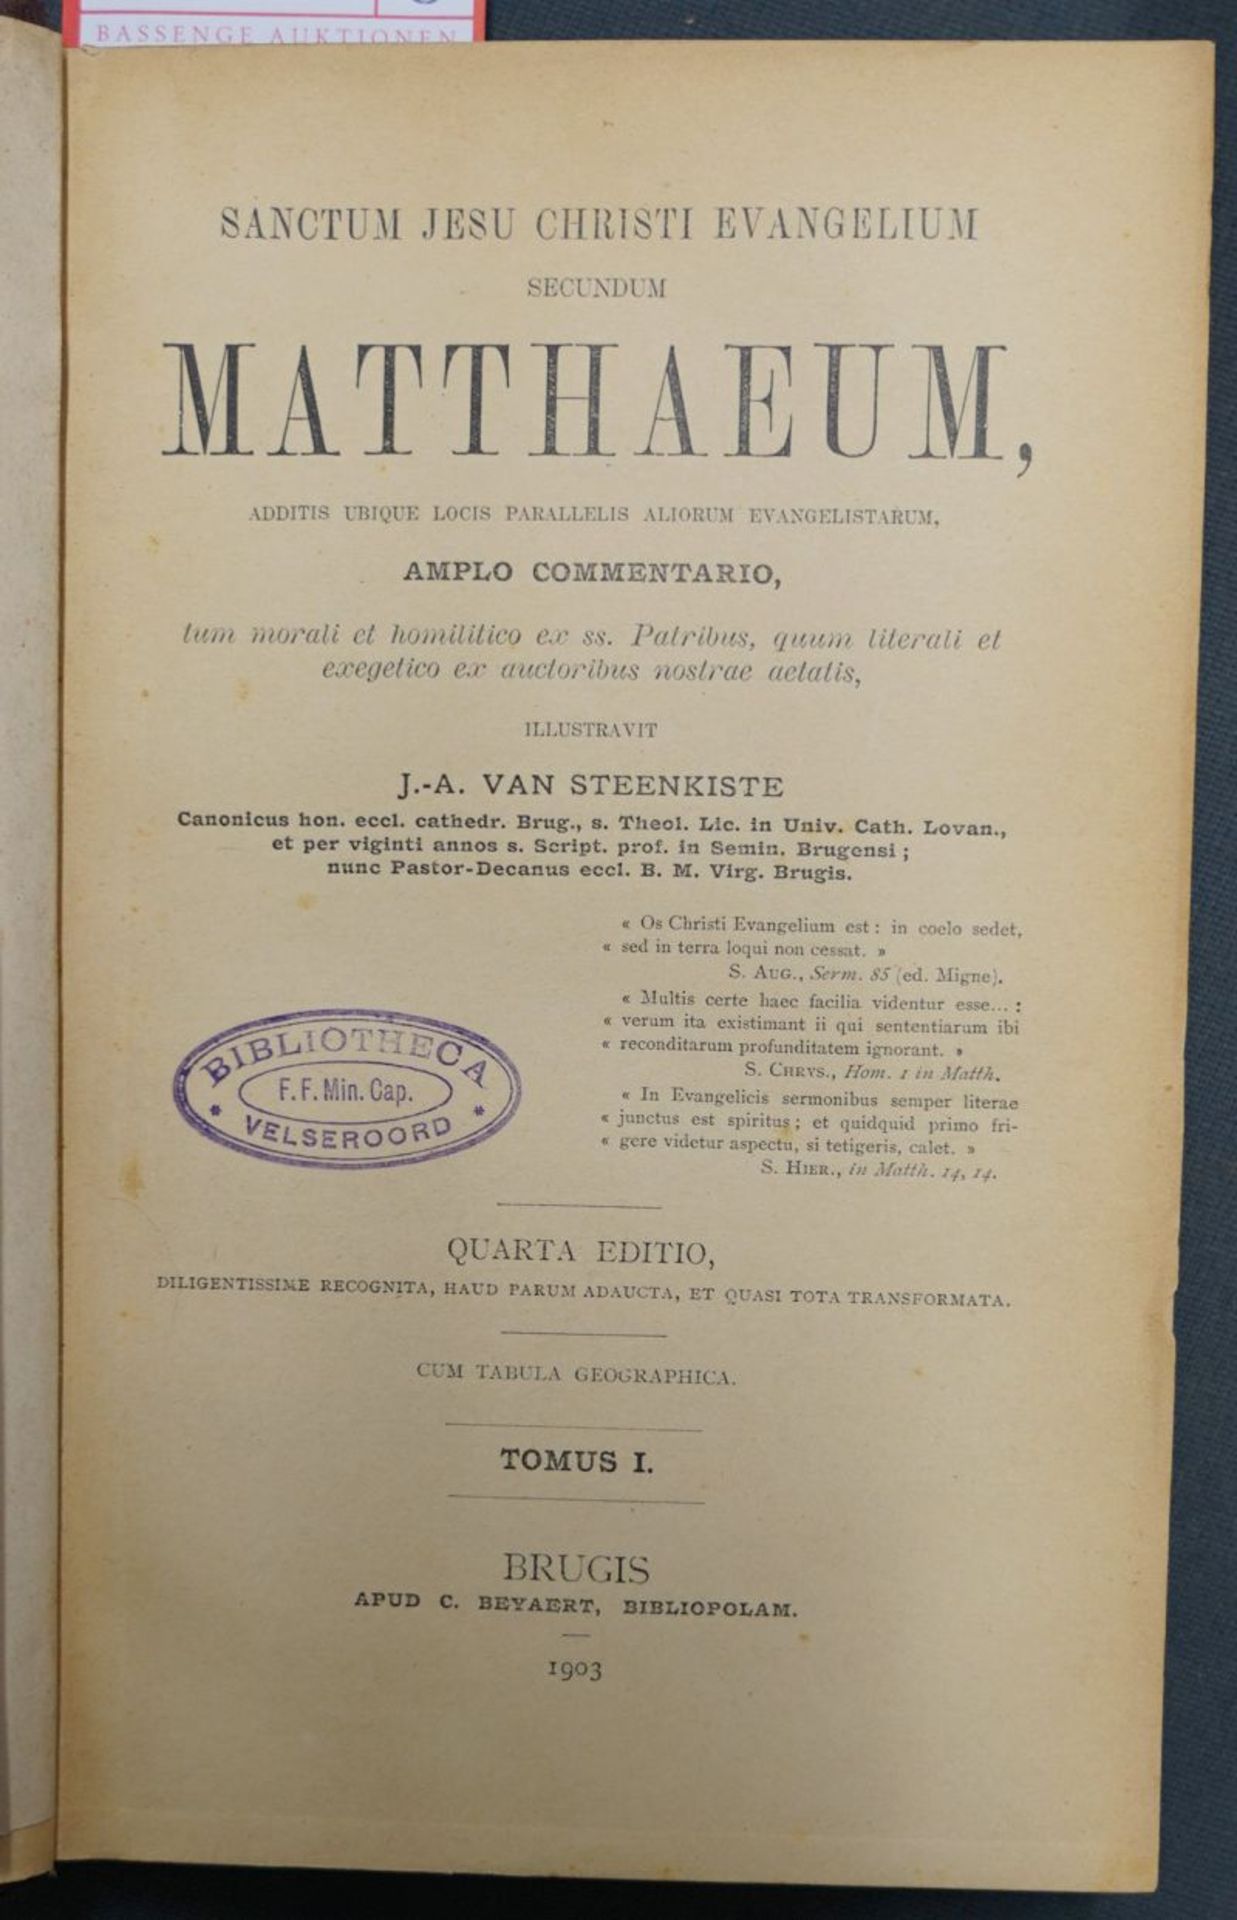 Steenkiste, J.-A. van: Sanctum Jesu Christi Evangelium secundum Matthaeum